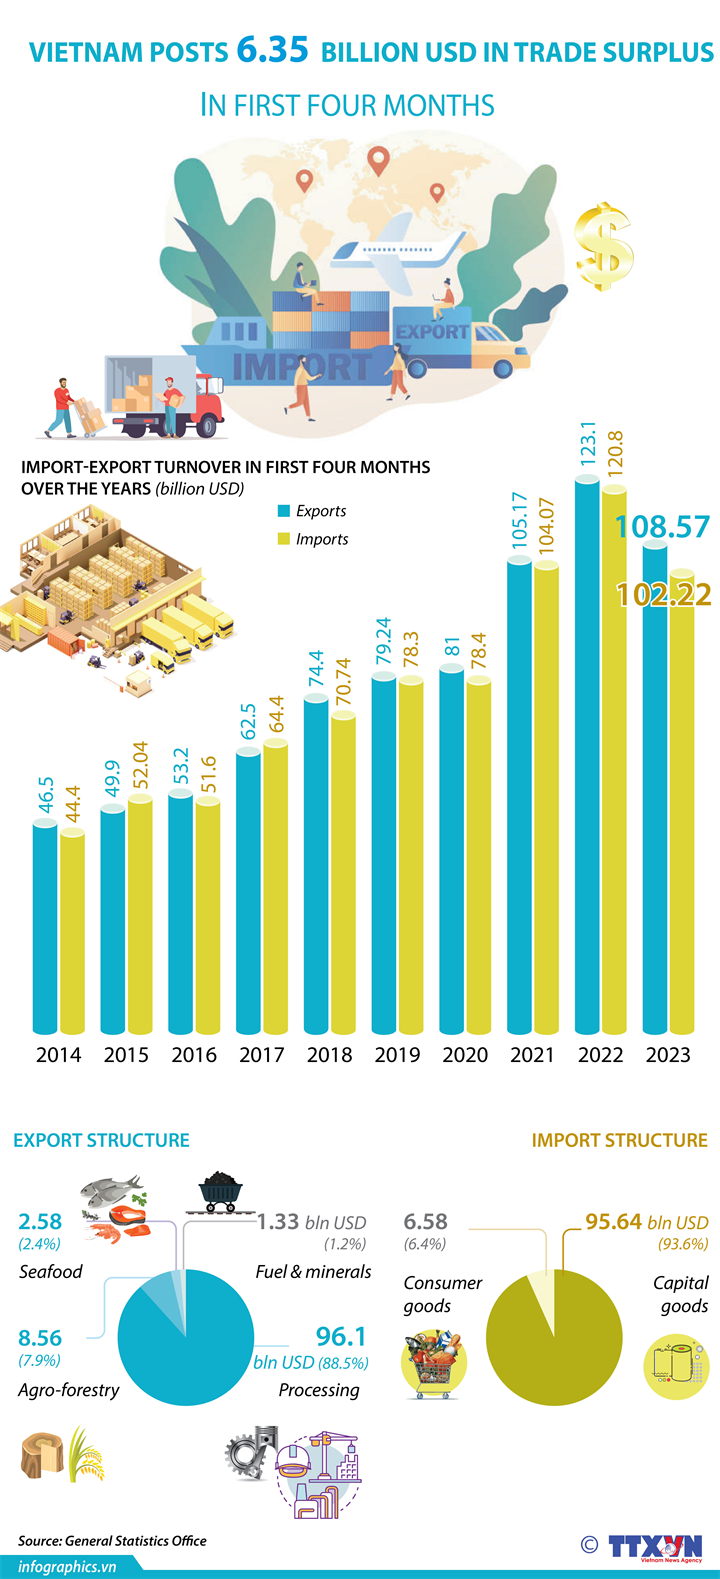 Vietnam posts 6.35 billion USD in trade surplus in first four months